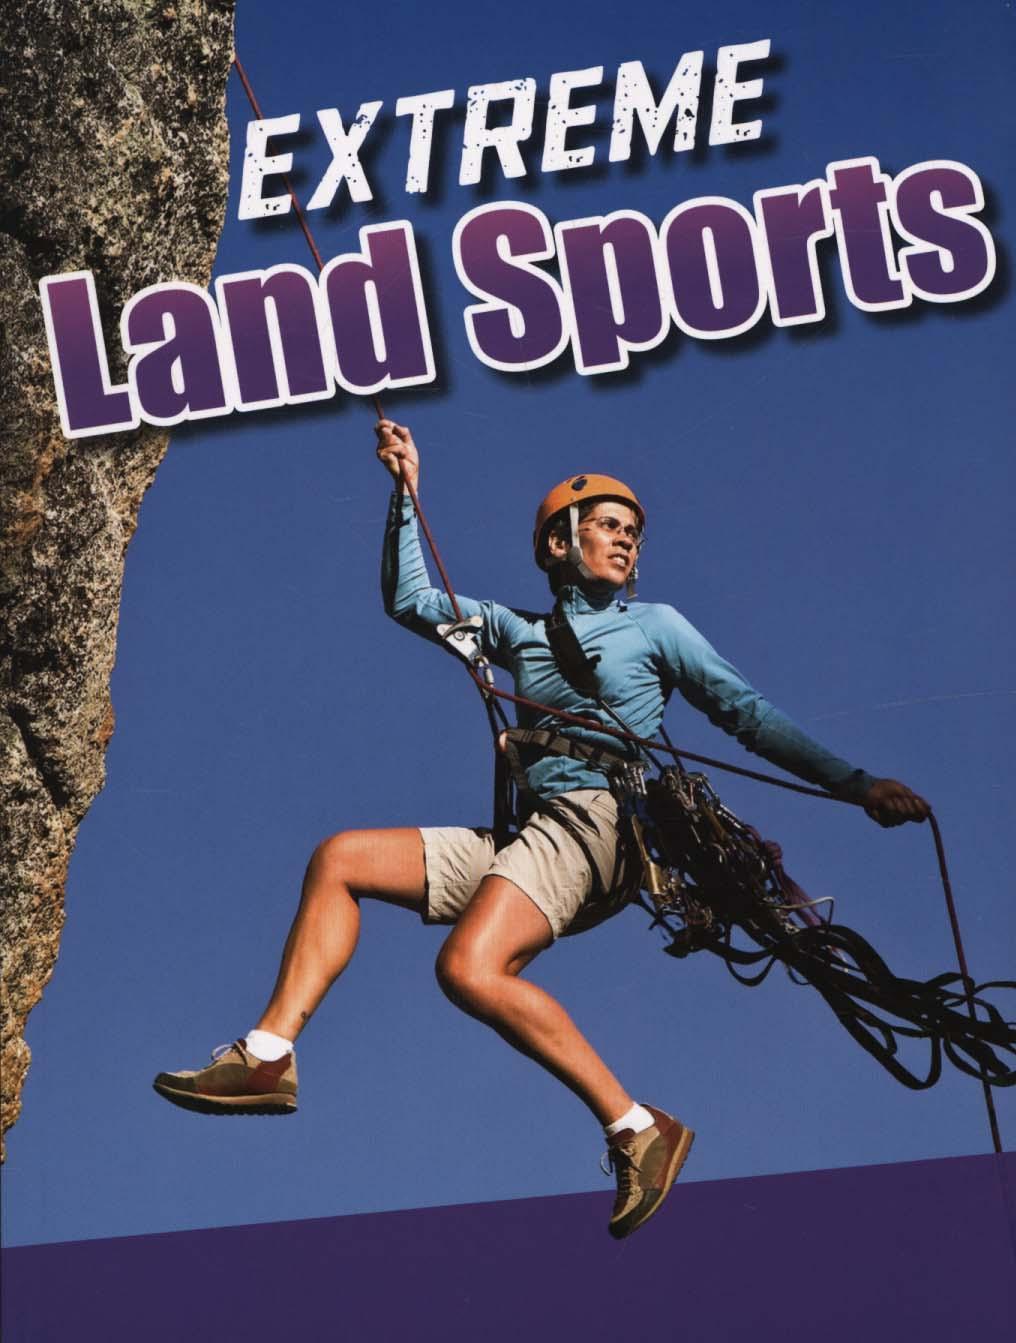 Extreme Land Sports